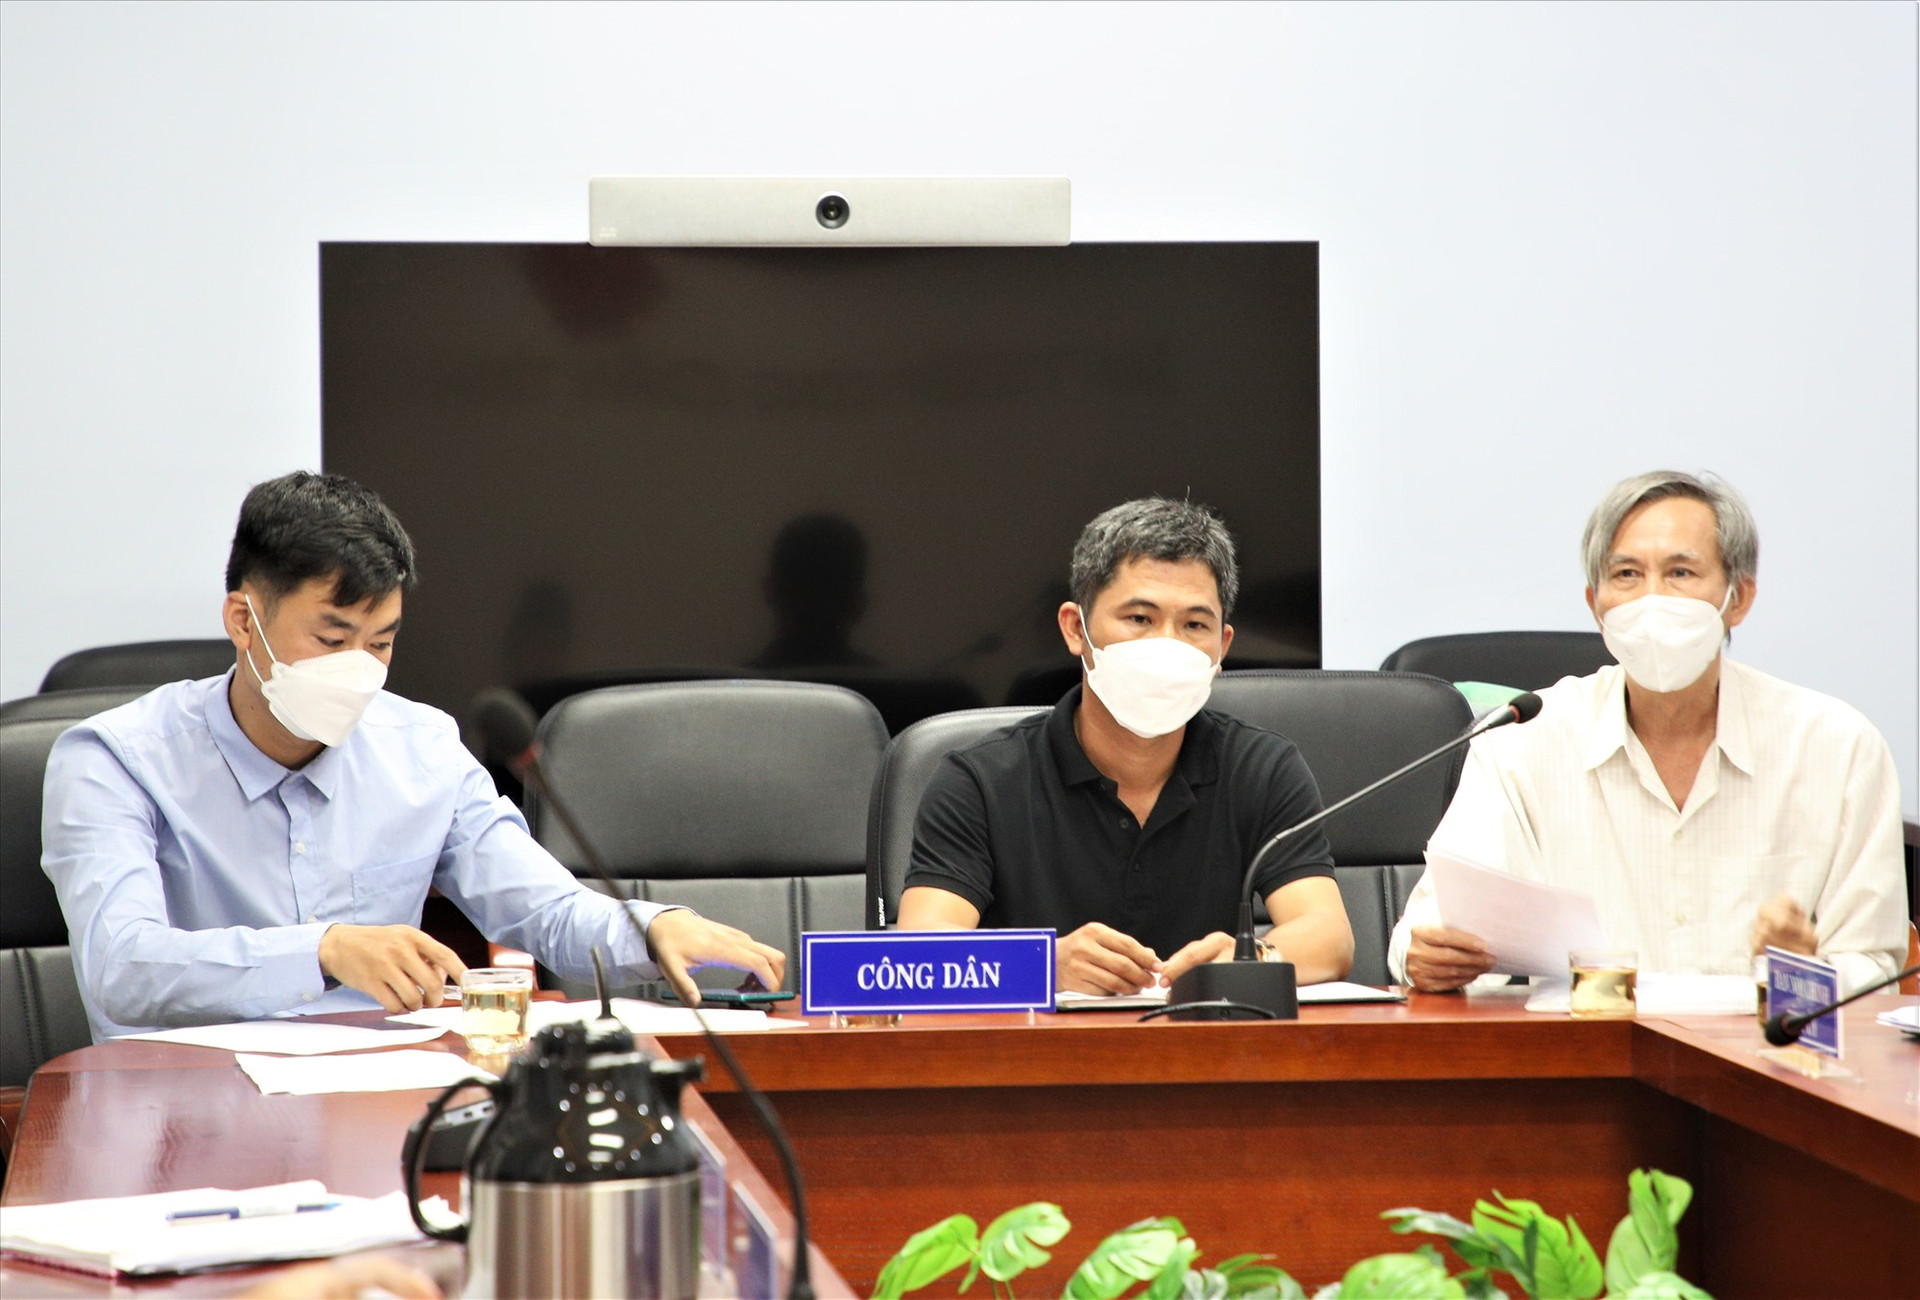 Đại diện các hộ dân trình bày kiến nghị liên quan đến chậm cấp Giấy chứng nhận quyền sử dụng đất thuộc các nhóm dự án đất ở tại thị xã Điện Bàn. Ảnh: A.N